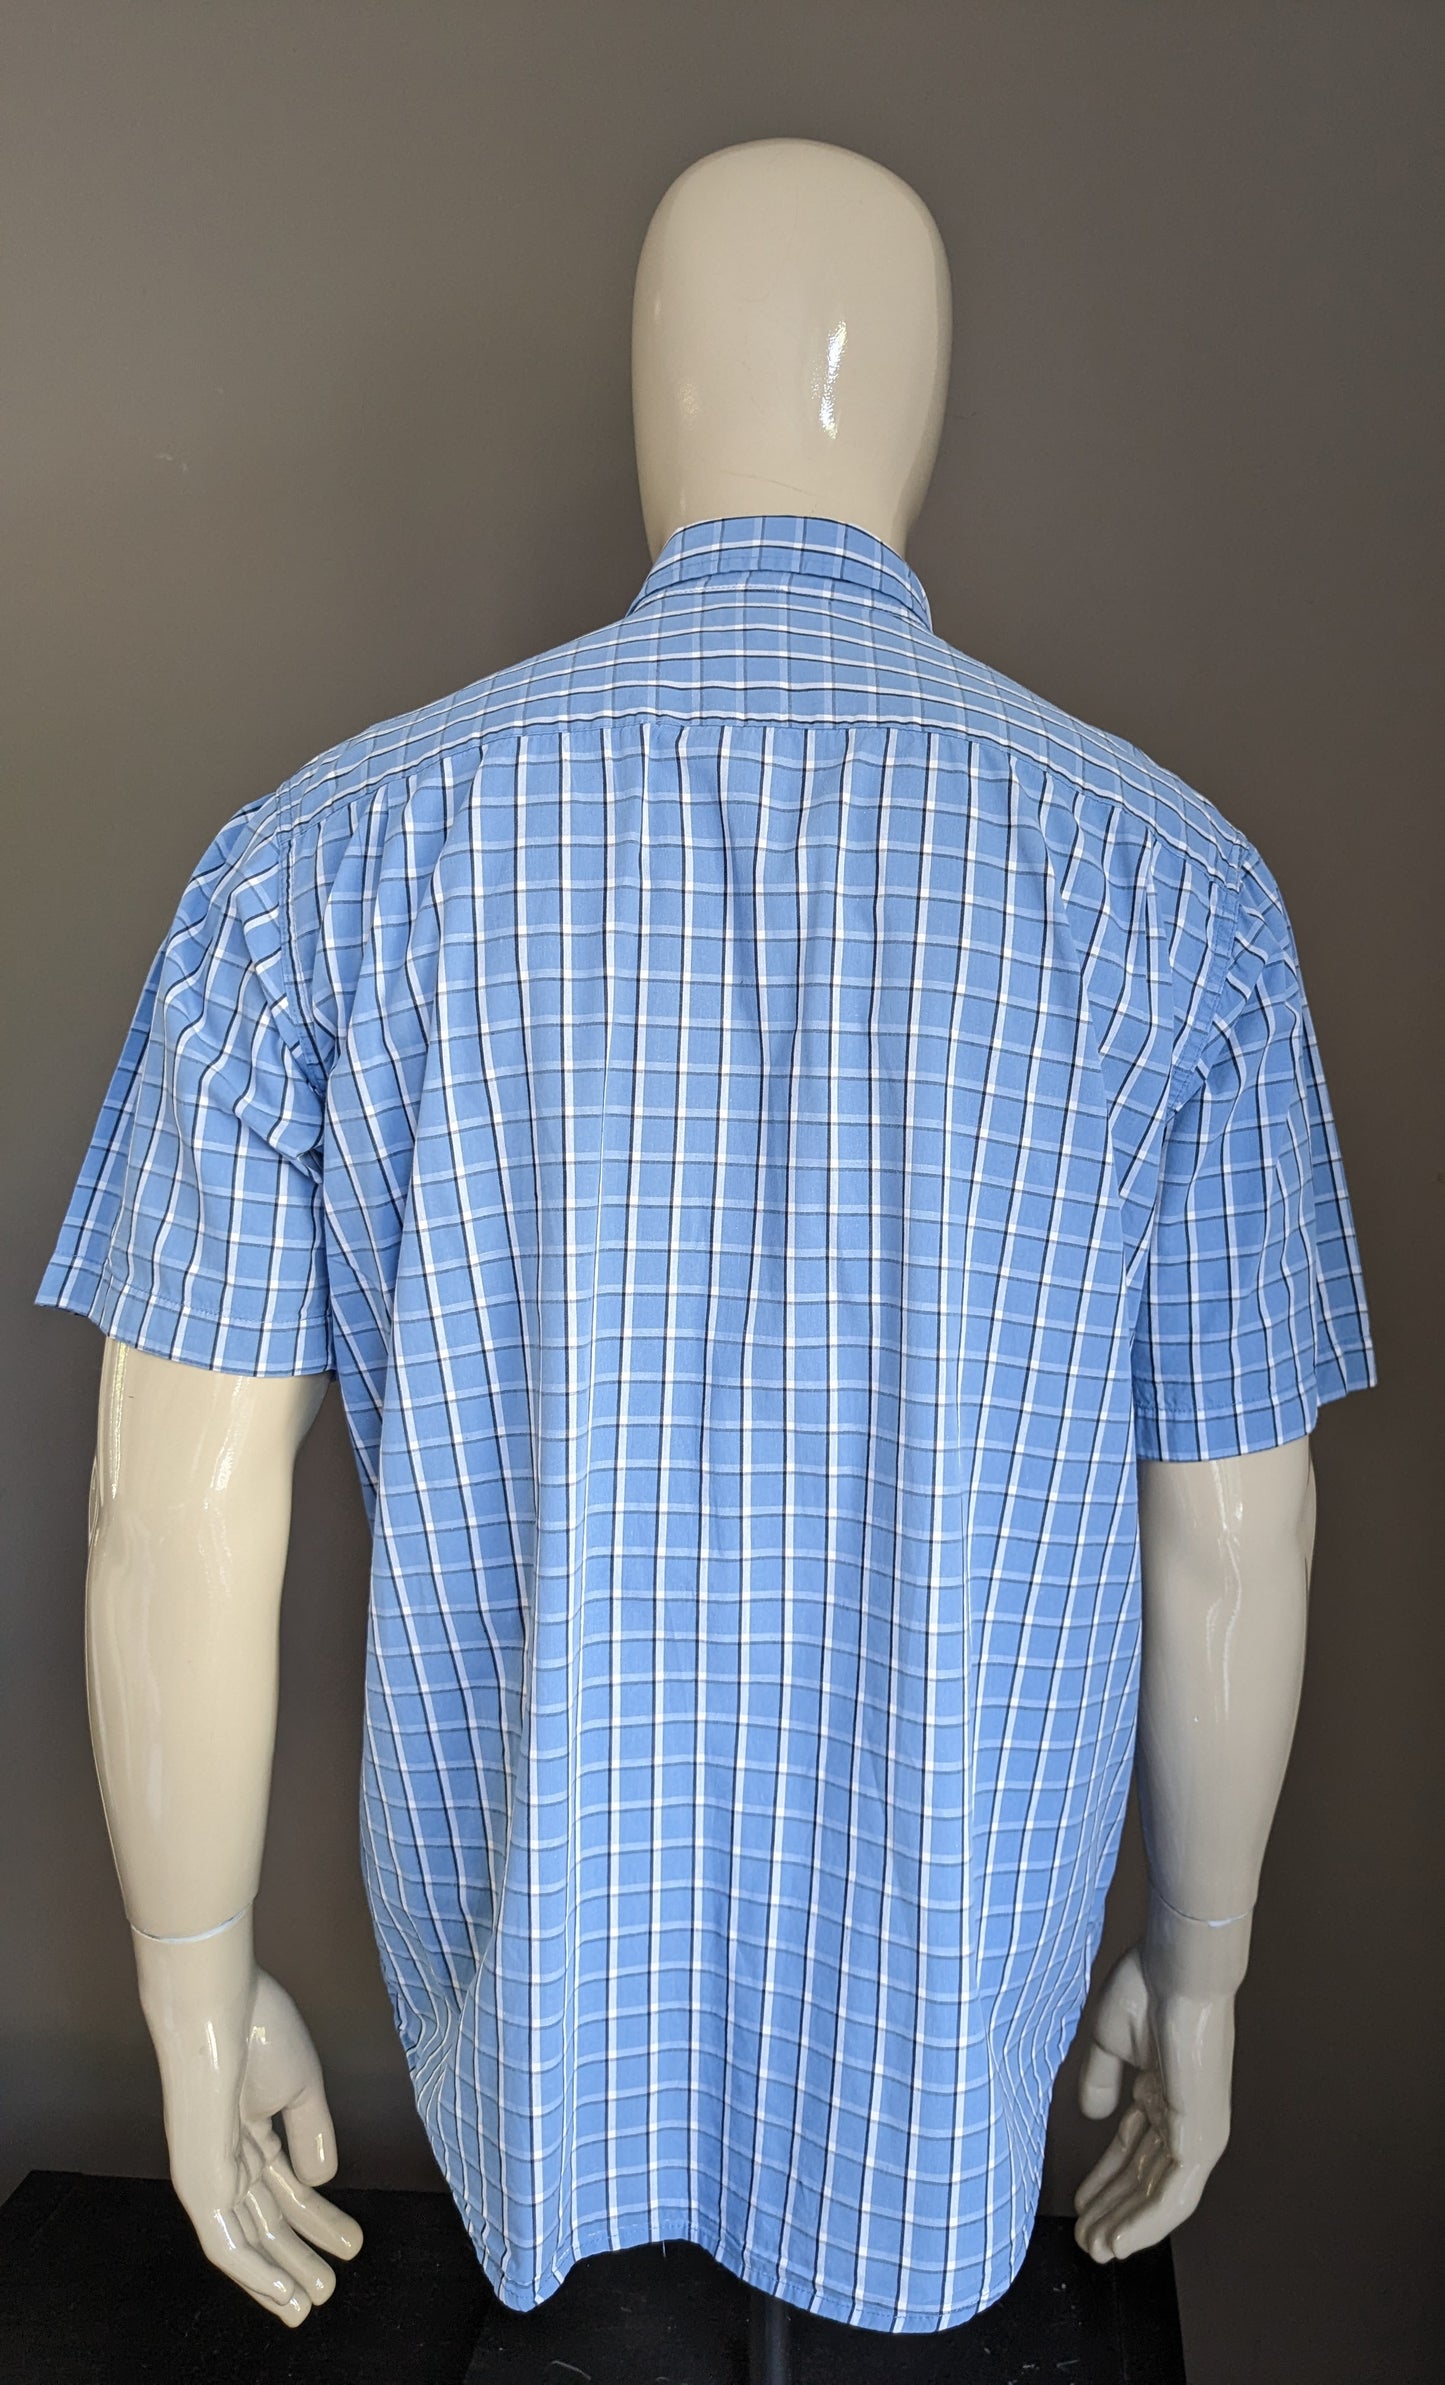 Shirt Wrangler Casta corta. Nero bianco blu controllato. Taglia L / XL.